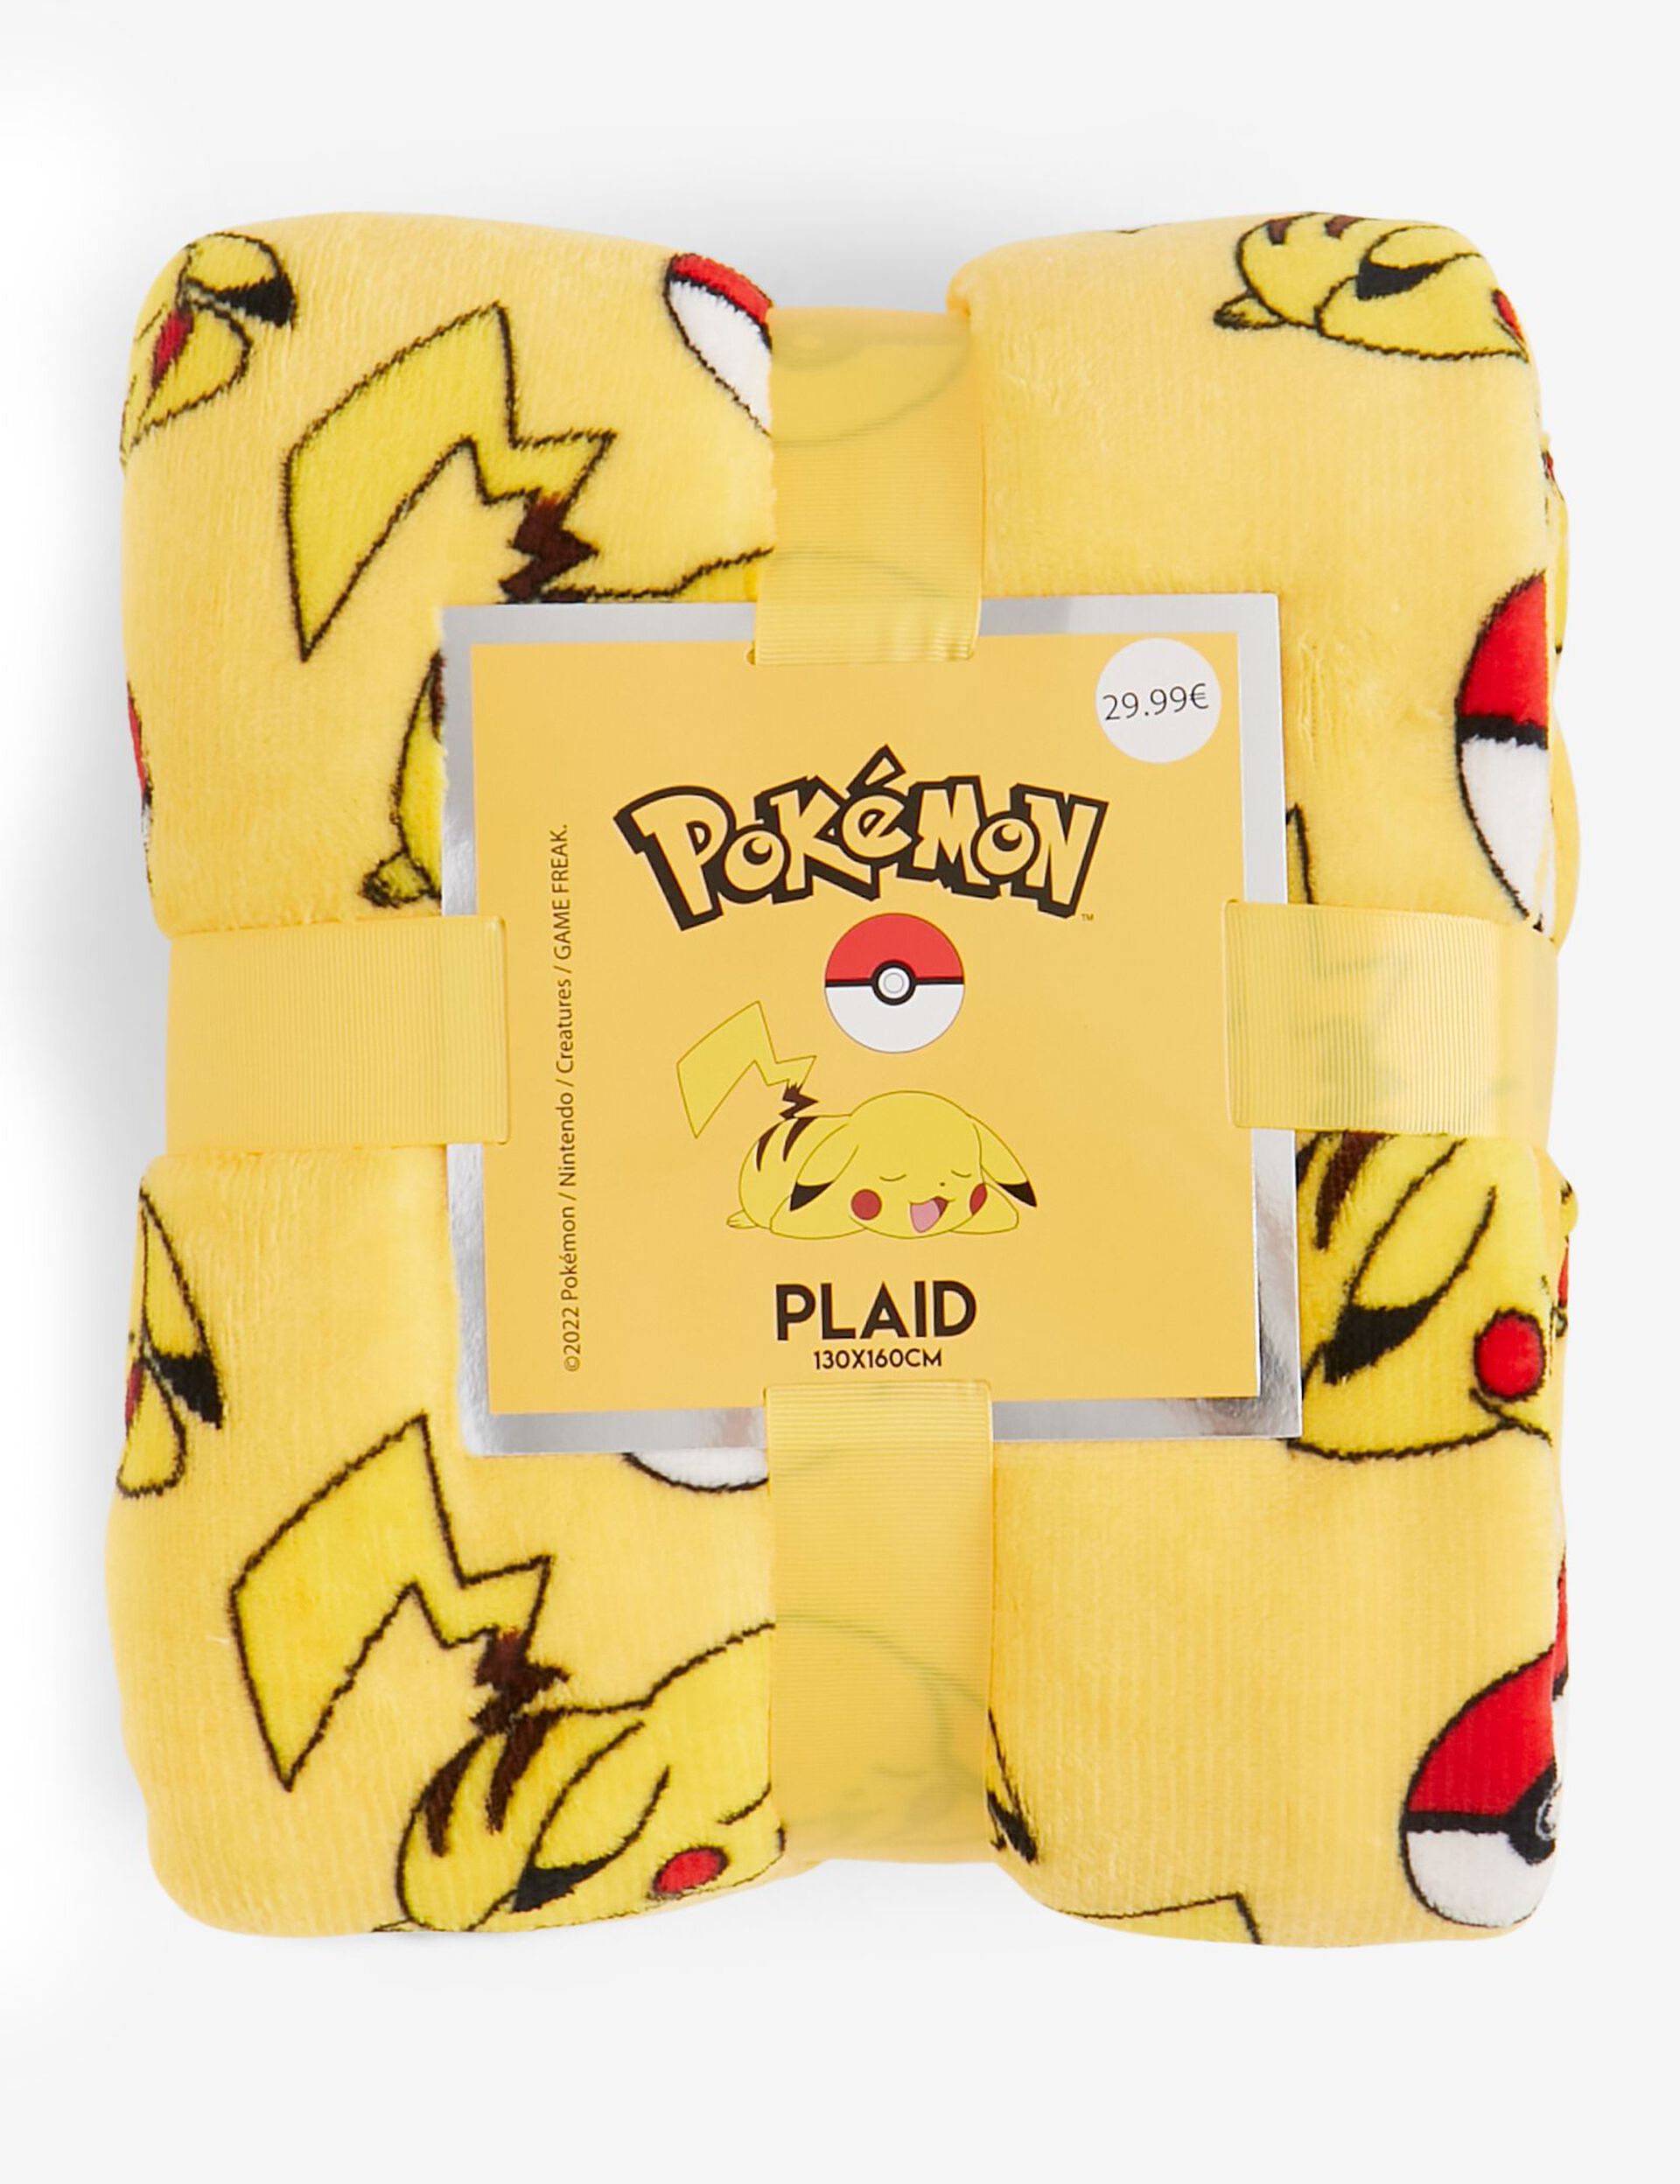 Plaid Pokemon Pikachu jaune 